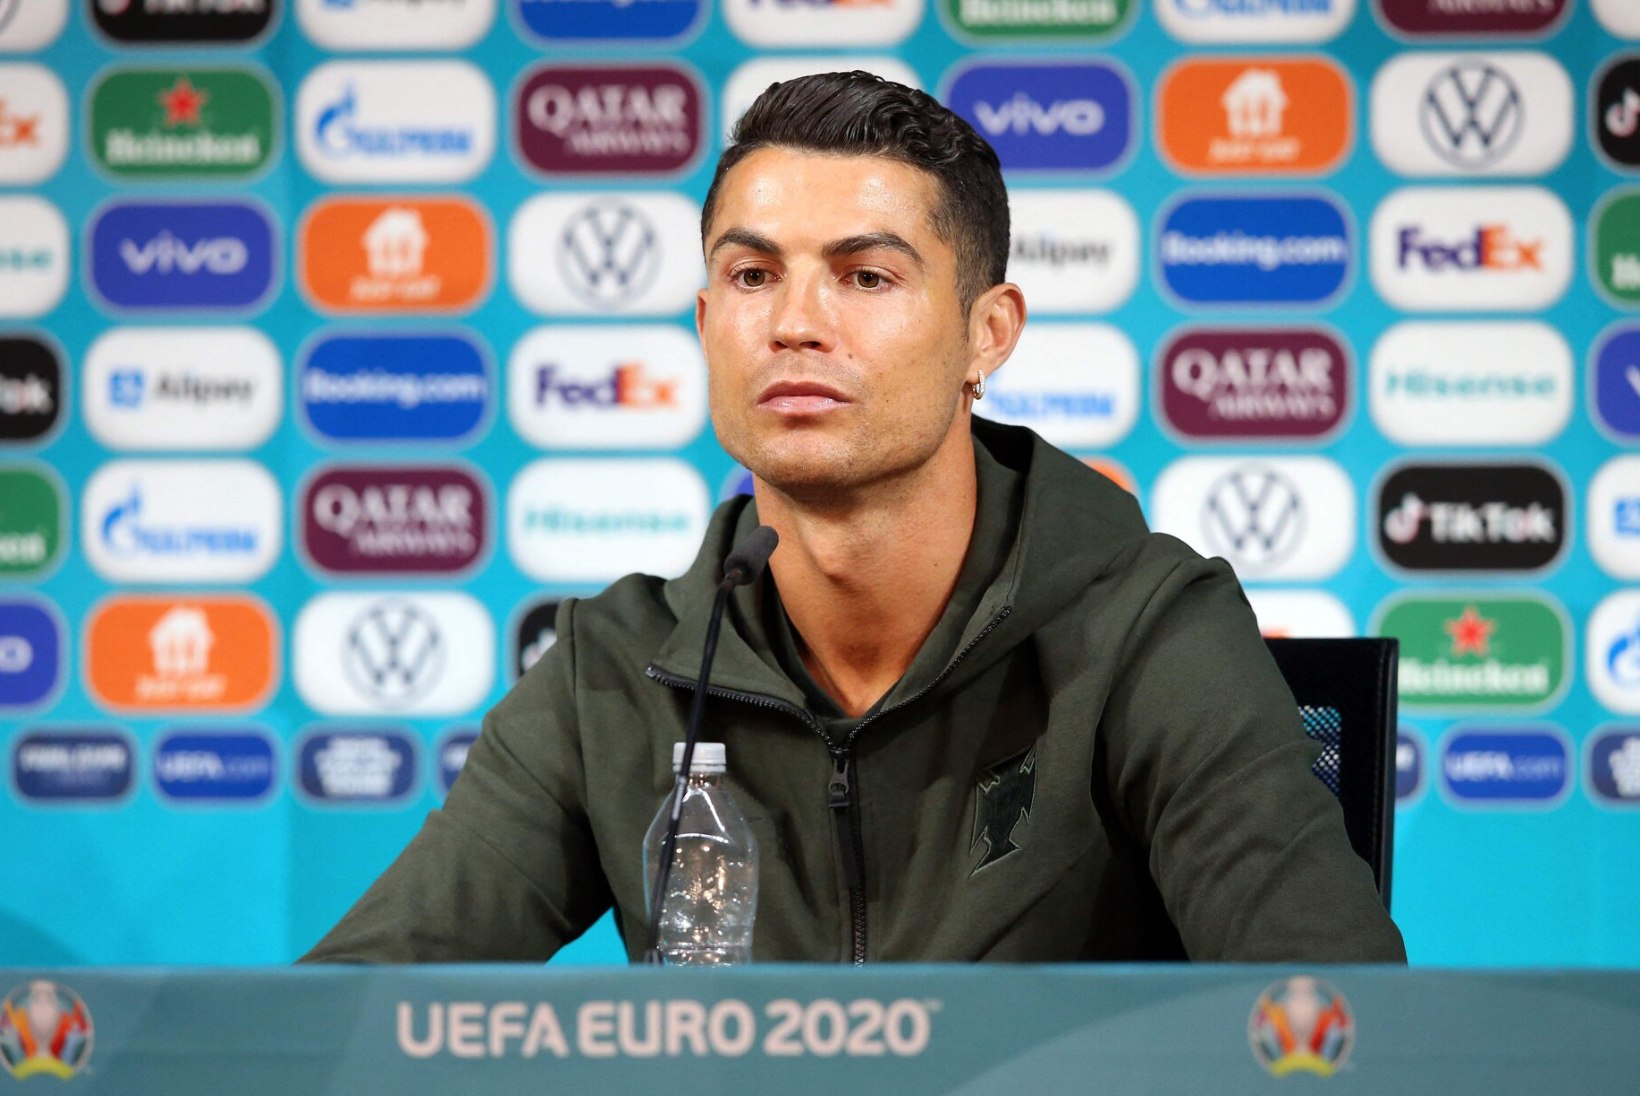 Cristiano Ronaldo võimalikust klubivahetusest: see, kas lahkun Juventusest või mitte, ei mõjuta mu esitusi EMil